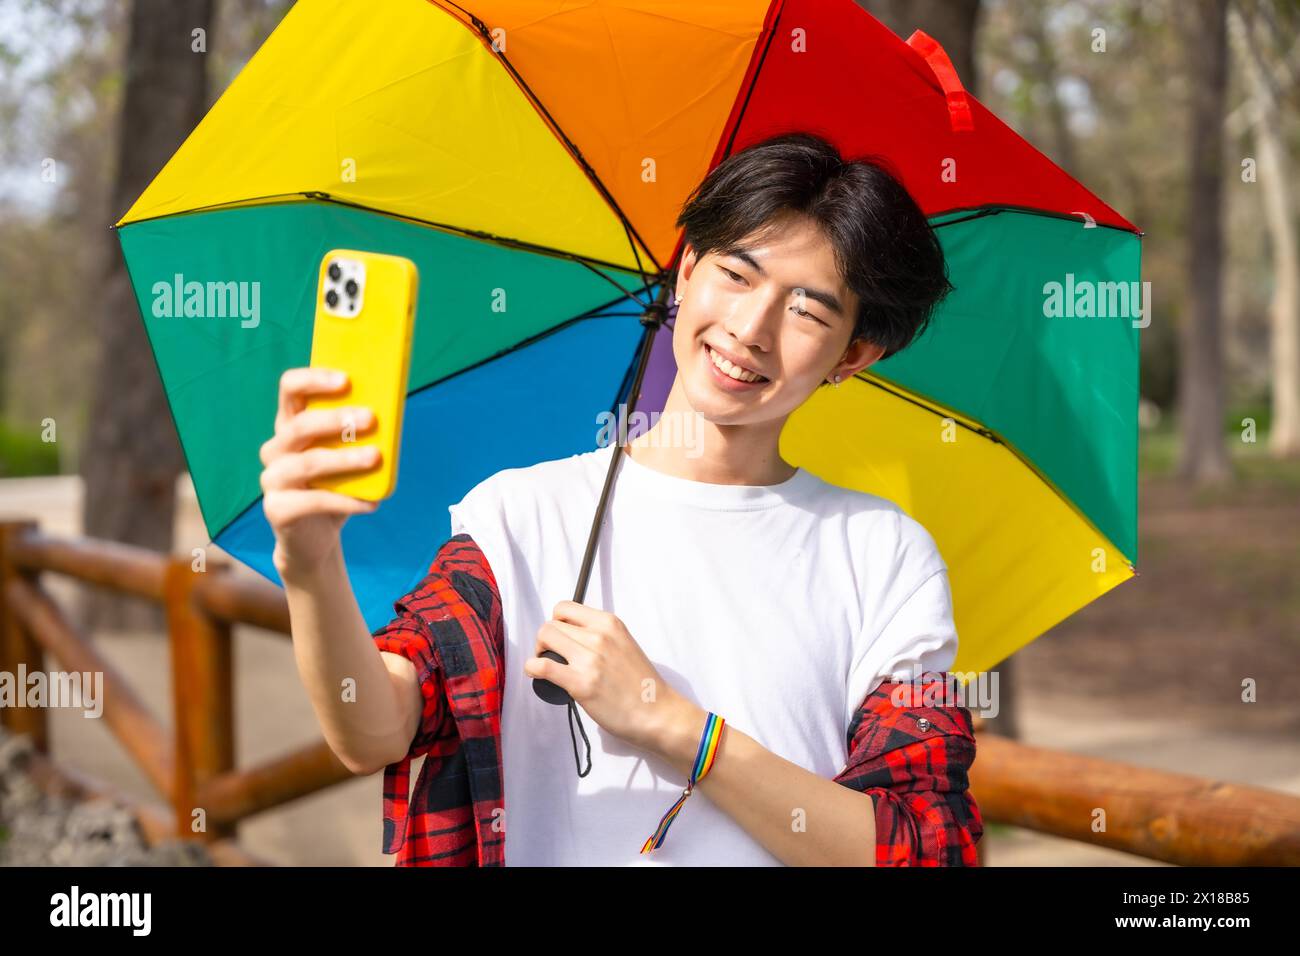 Homme gay chinois prenant un selfie avec un téléphone portable tout en tenant un parapluie de couleur arc-en-ciel debout dans un parc Banque D'Images